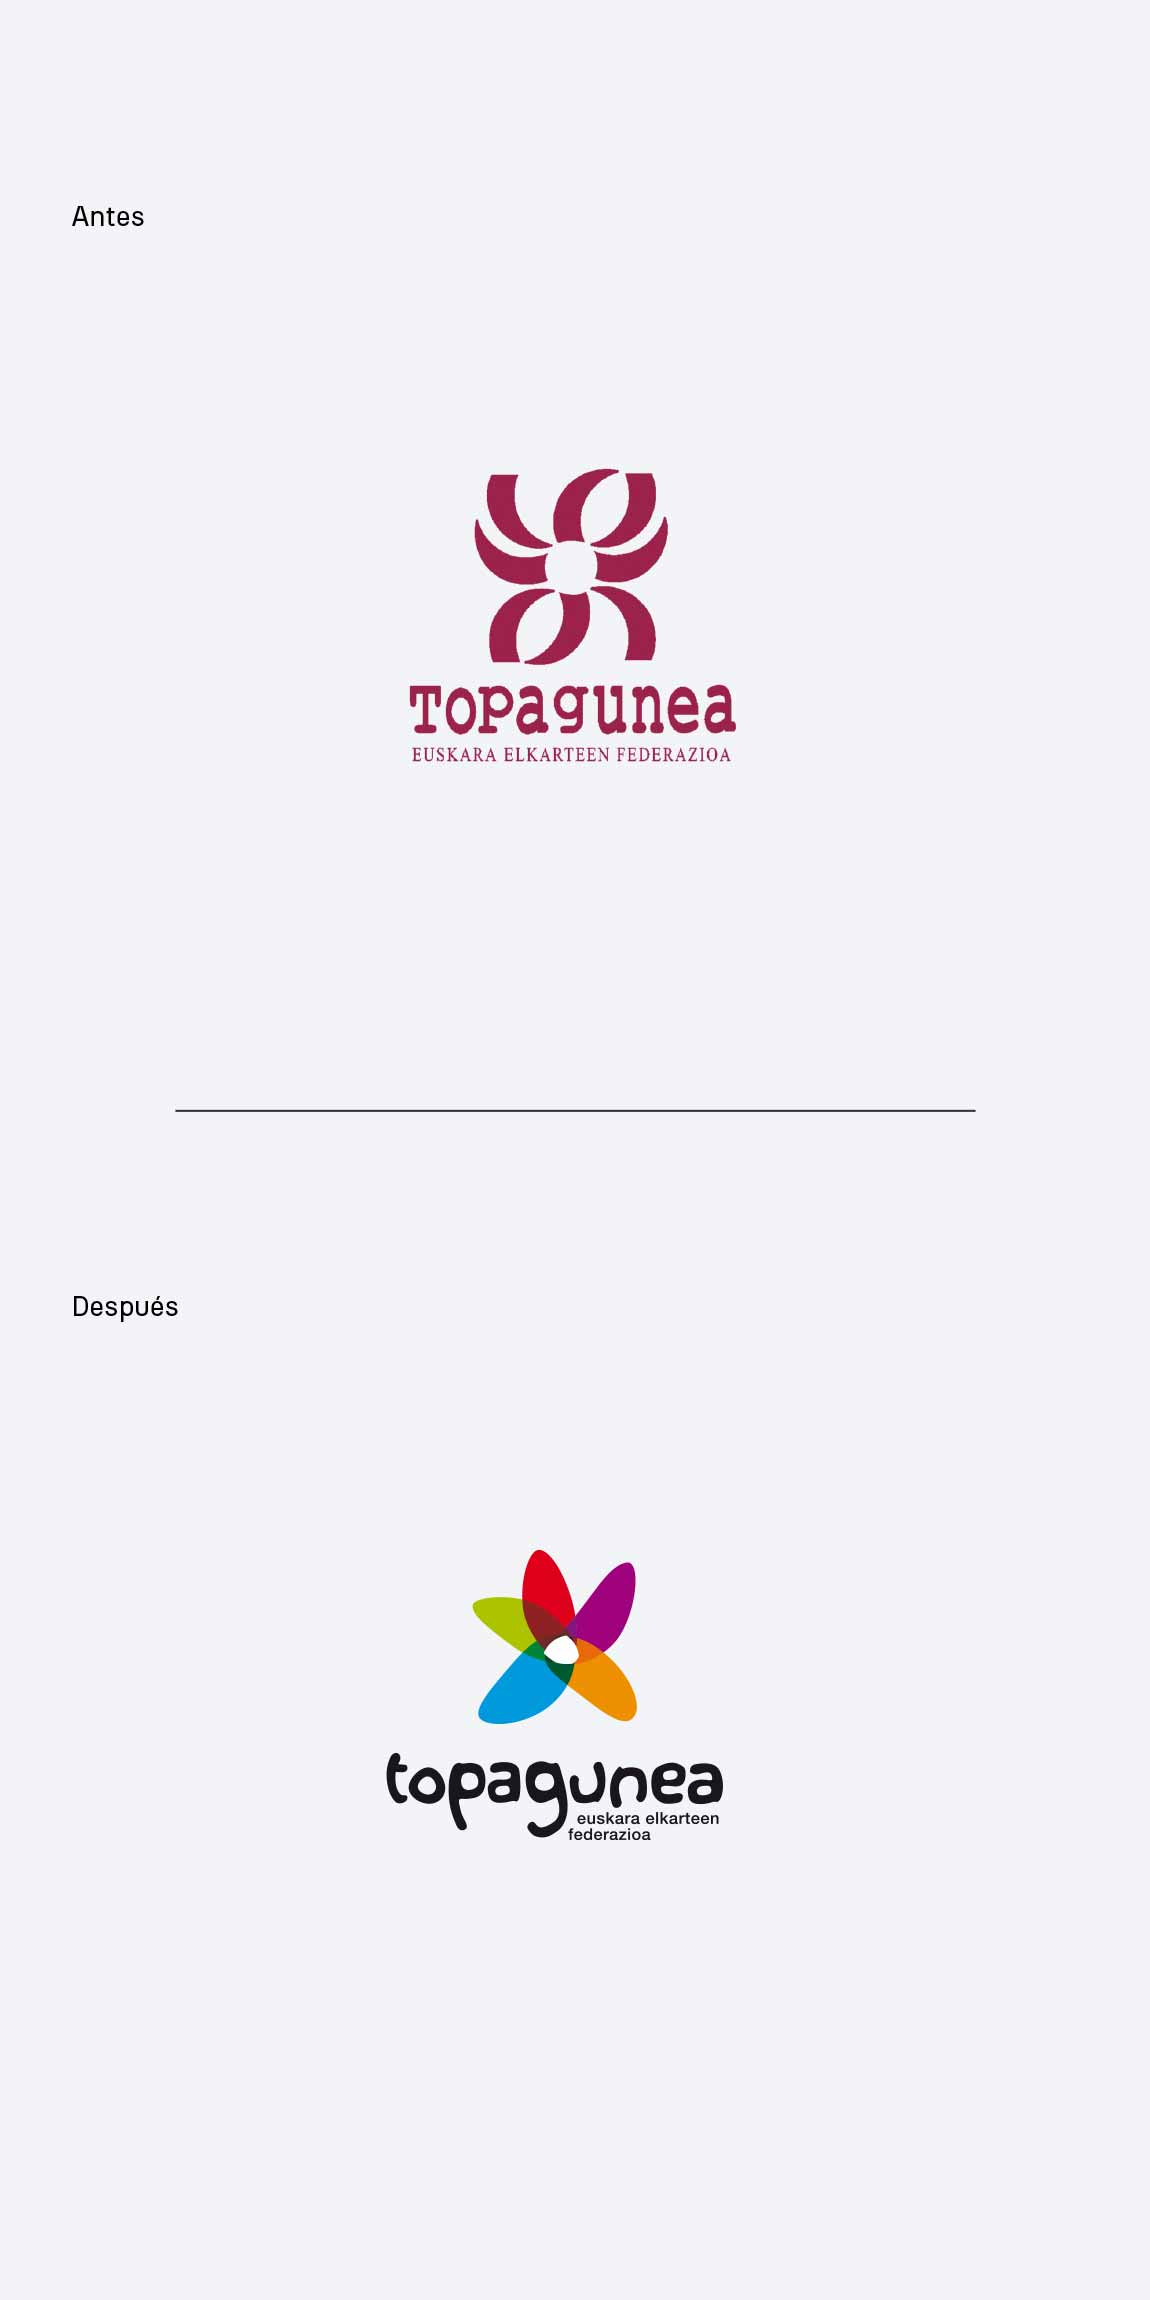 Rebranding Topagunea Antes y después